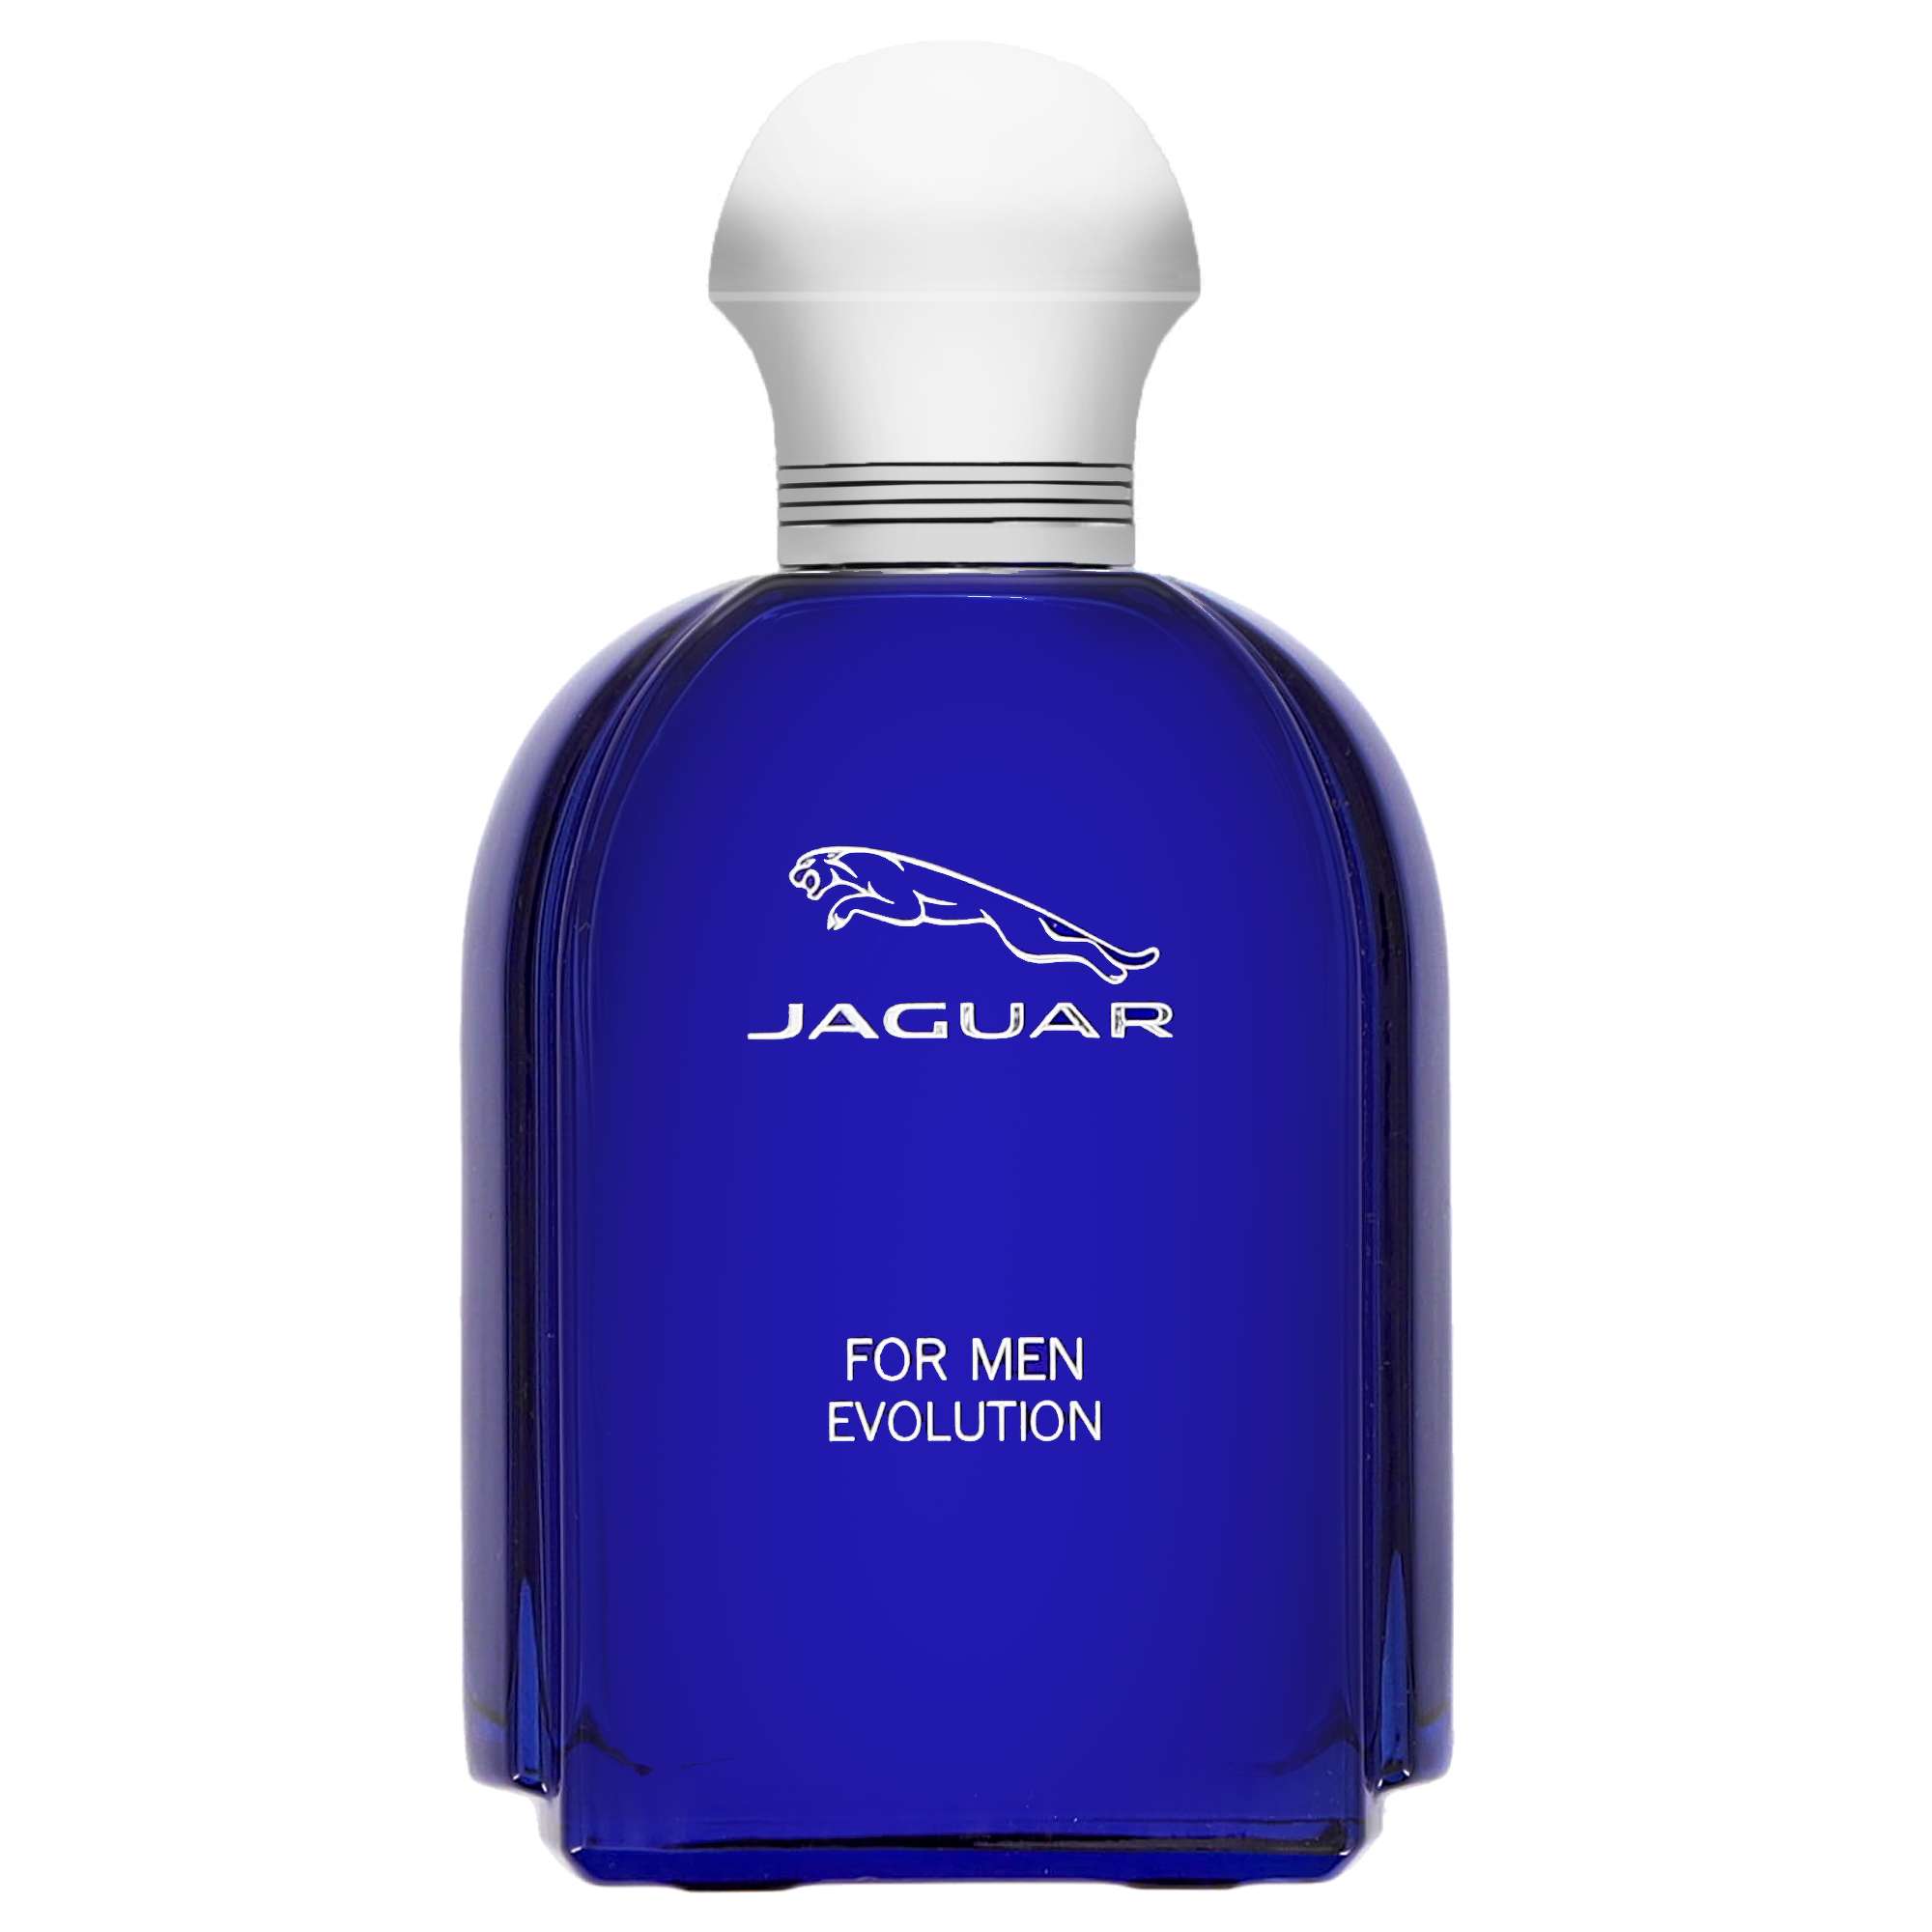 Photos - Men's Fragrance Jaguar Evolution Eau de Toilette Spray 100ml 